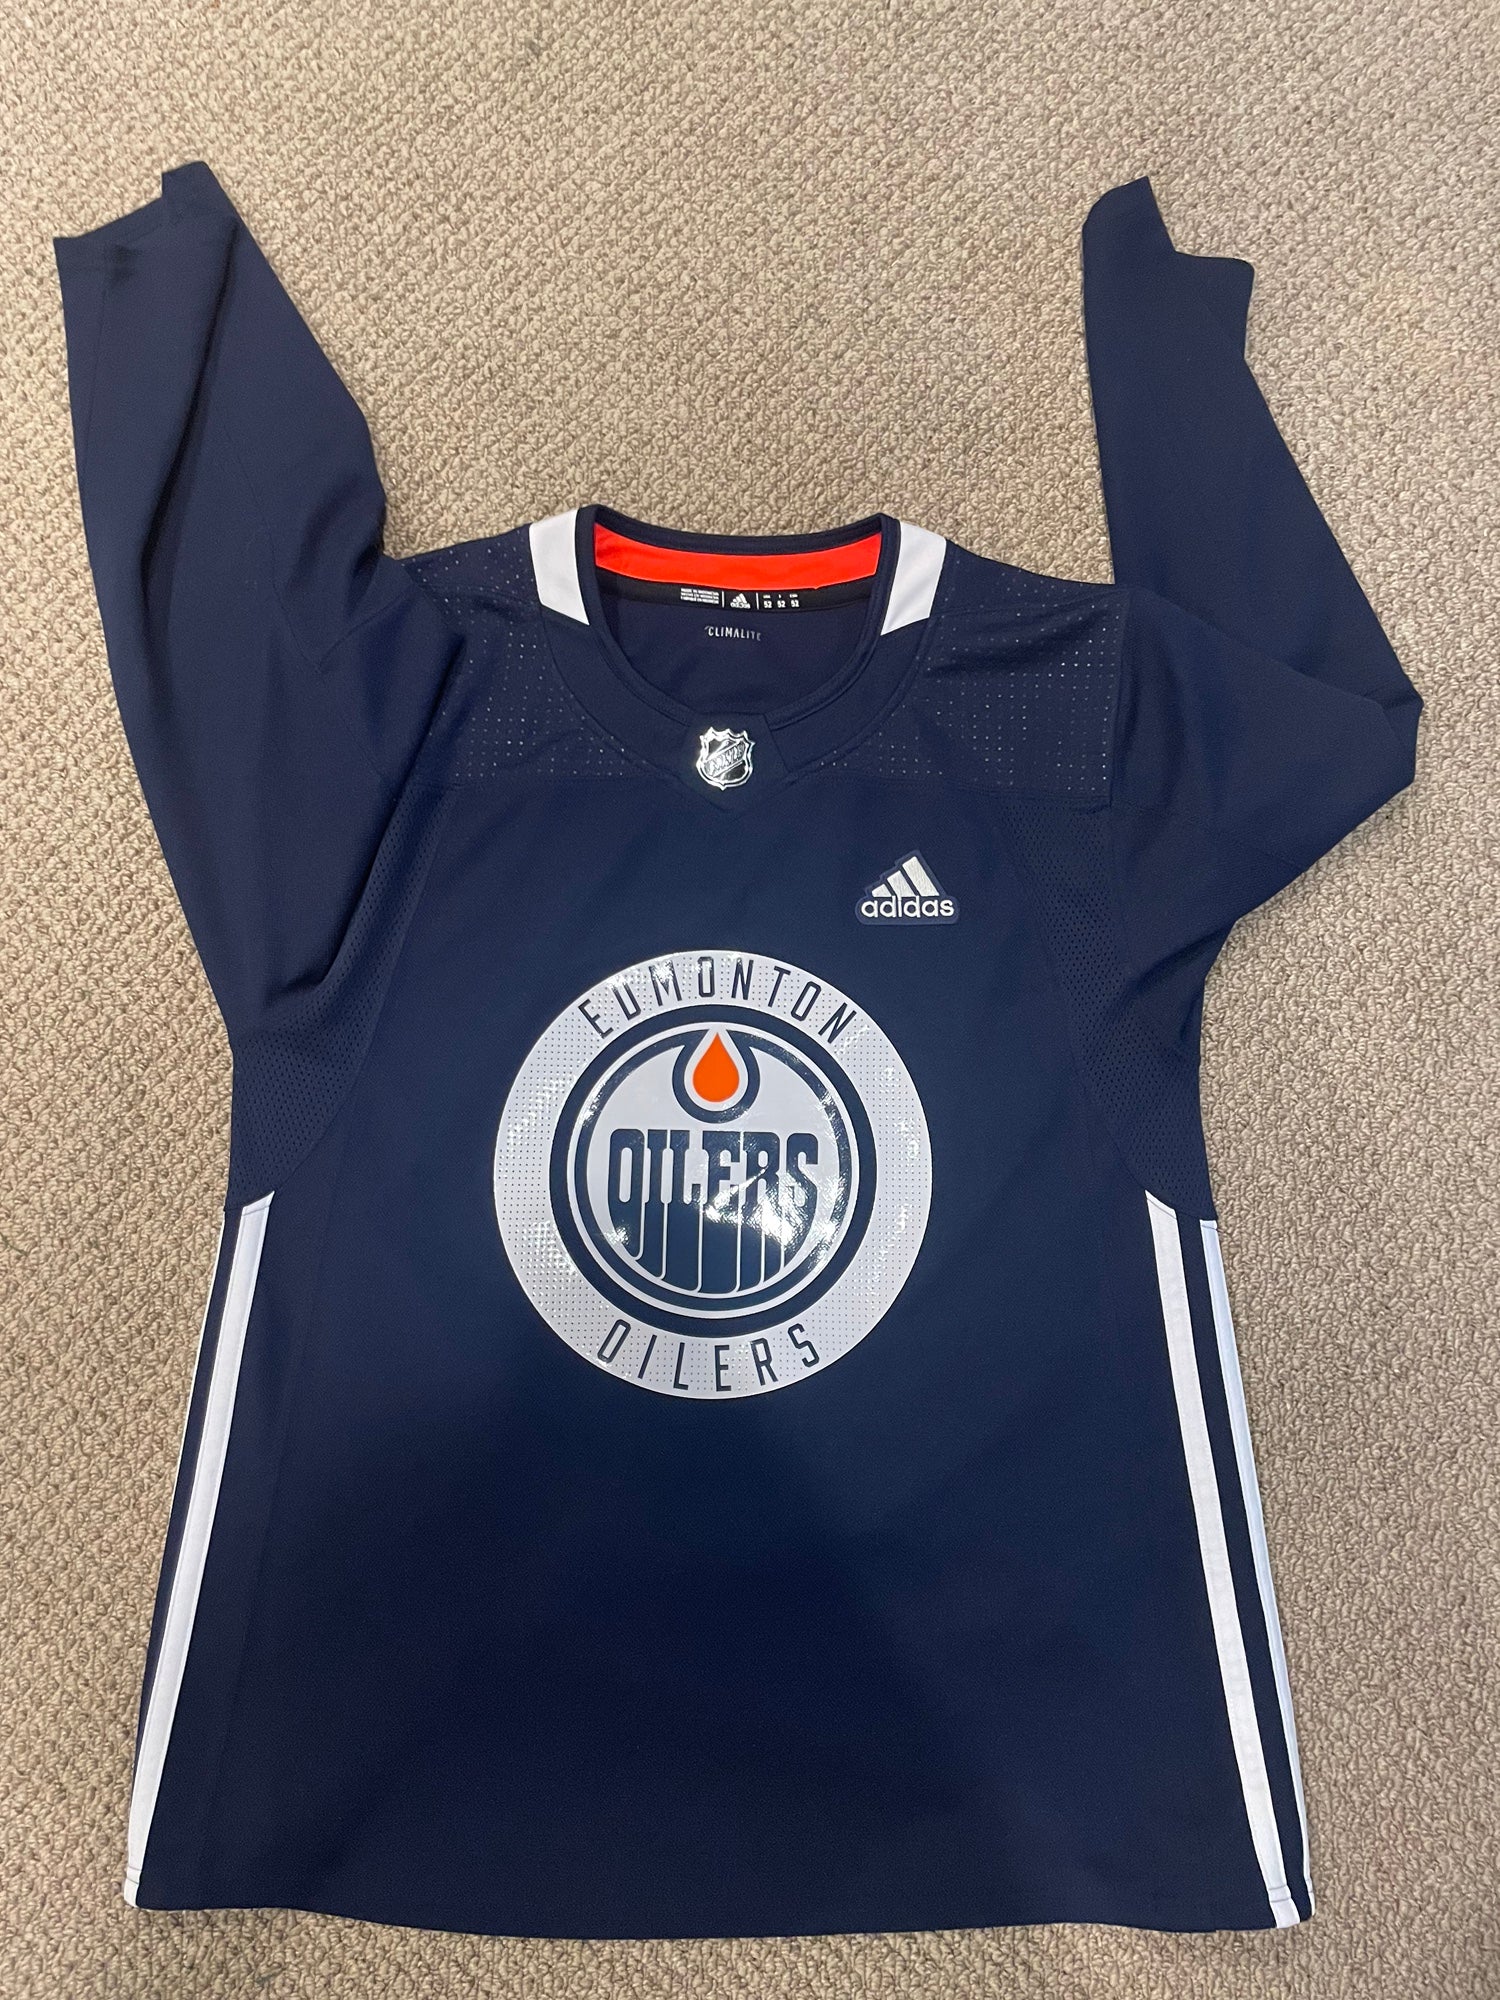 Adidas Edmonton Oilers 29 Leon Draisaitl Navy Blue Hockey Jersey Size 52